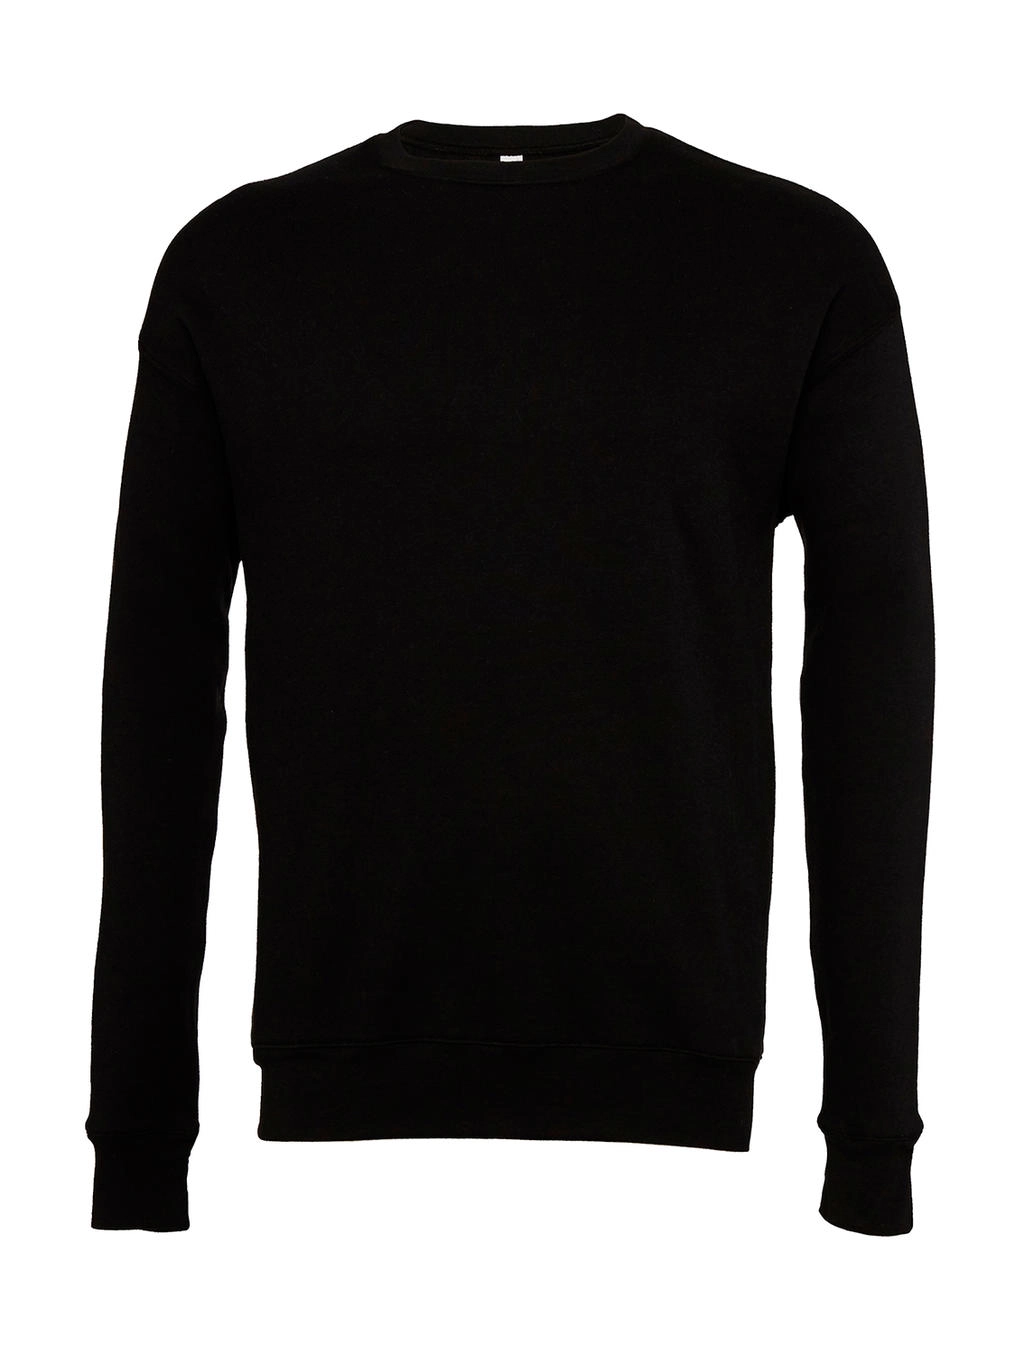 Unisex Drop Shoulder Fleece zum Besticken und Bedrucken in der Farbe Black mit Ihren Logo, Schriftzug oder Motiv.